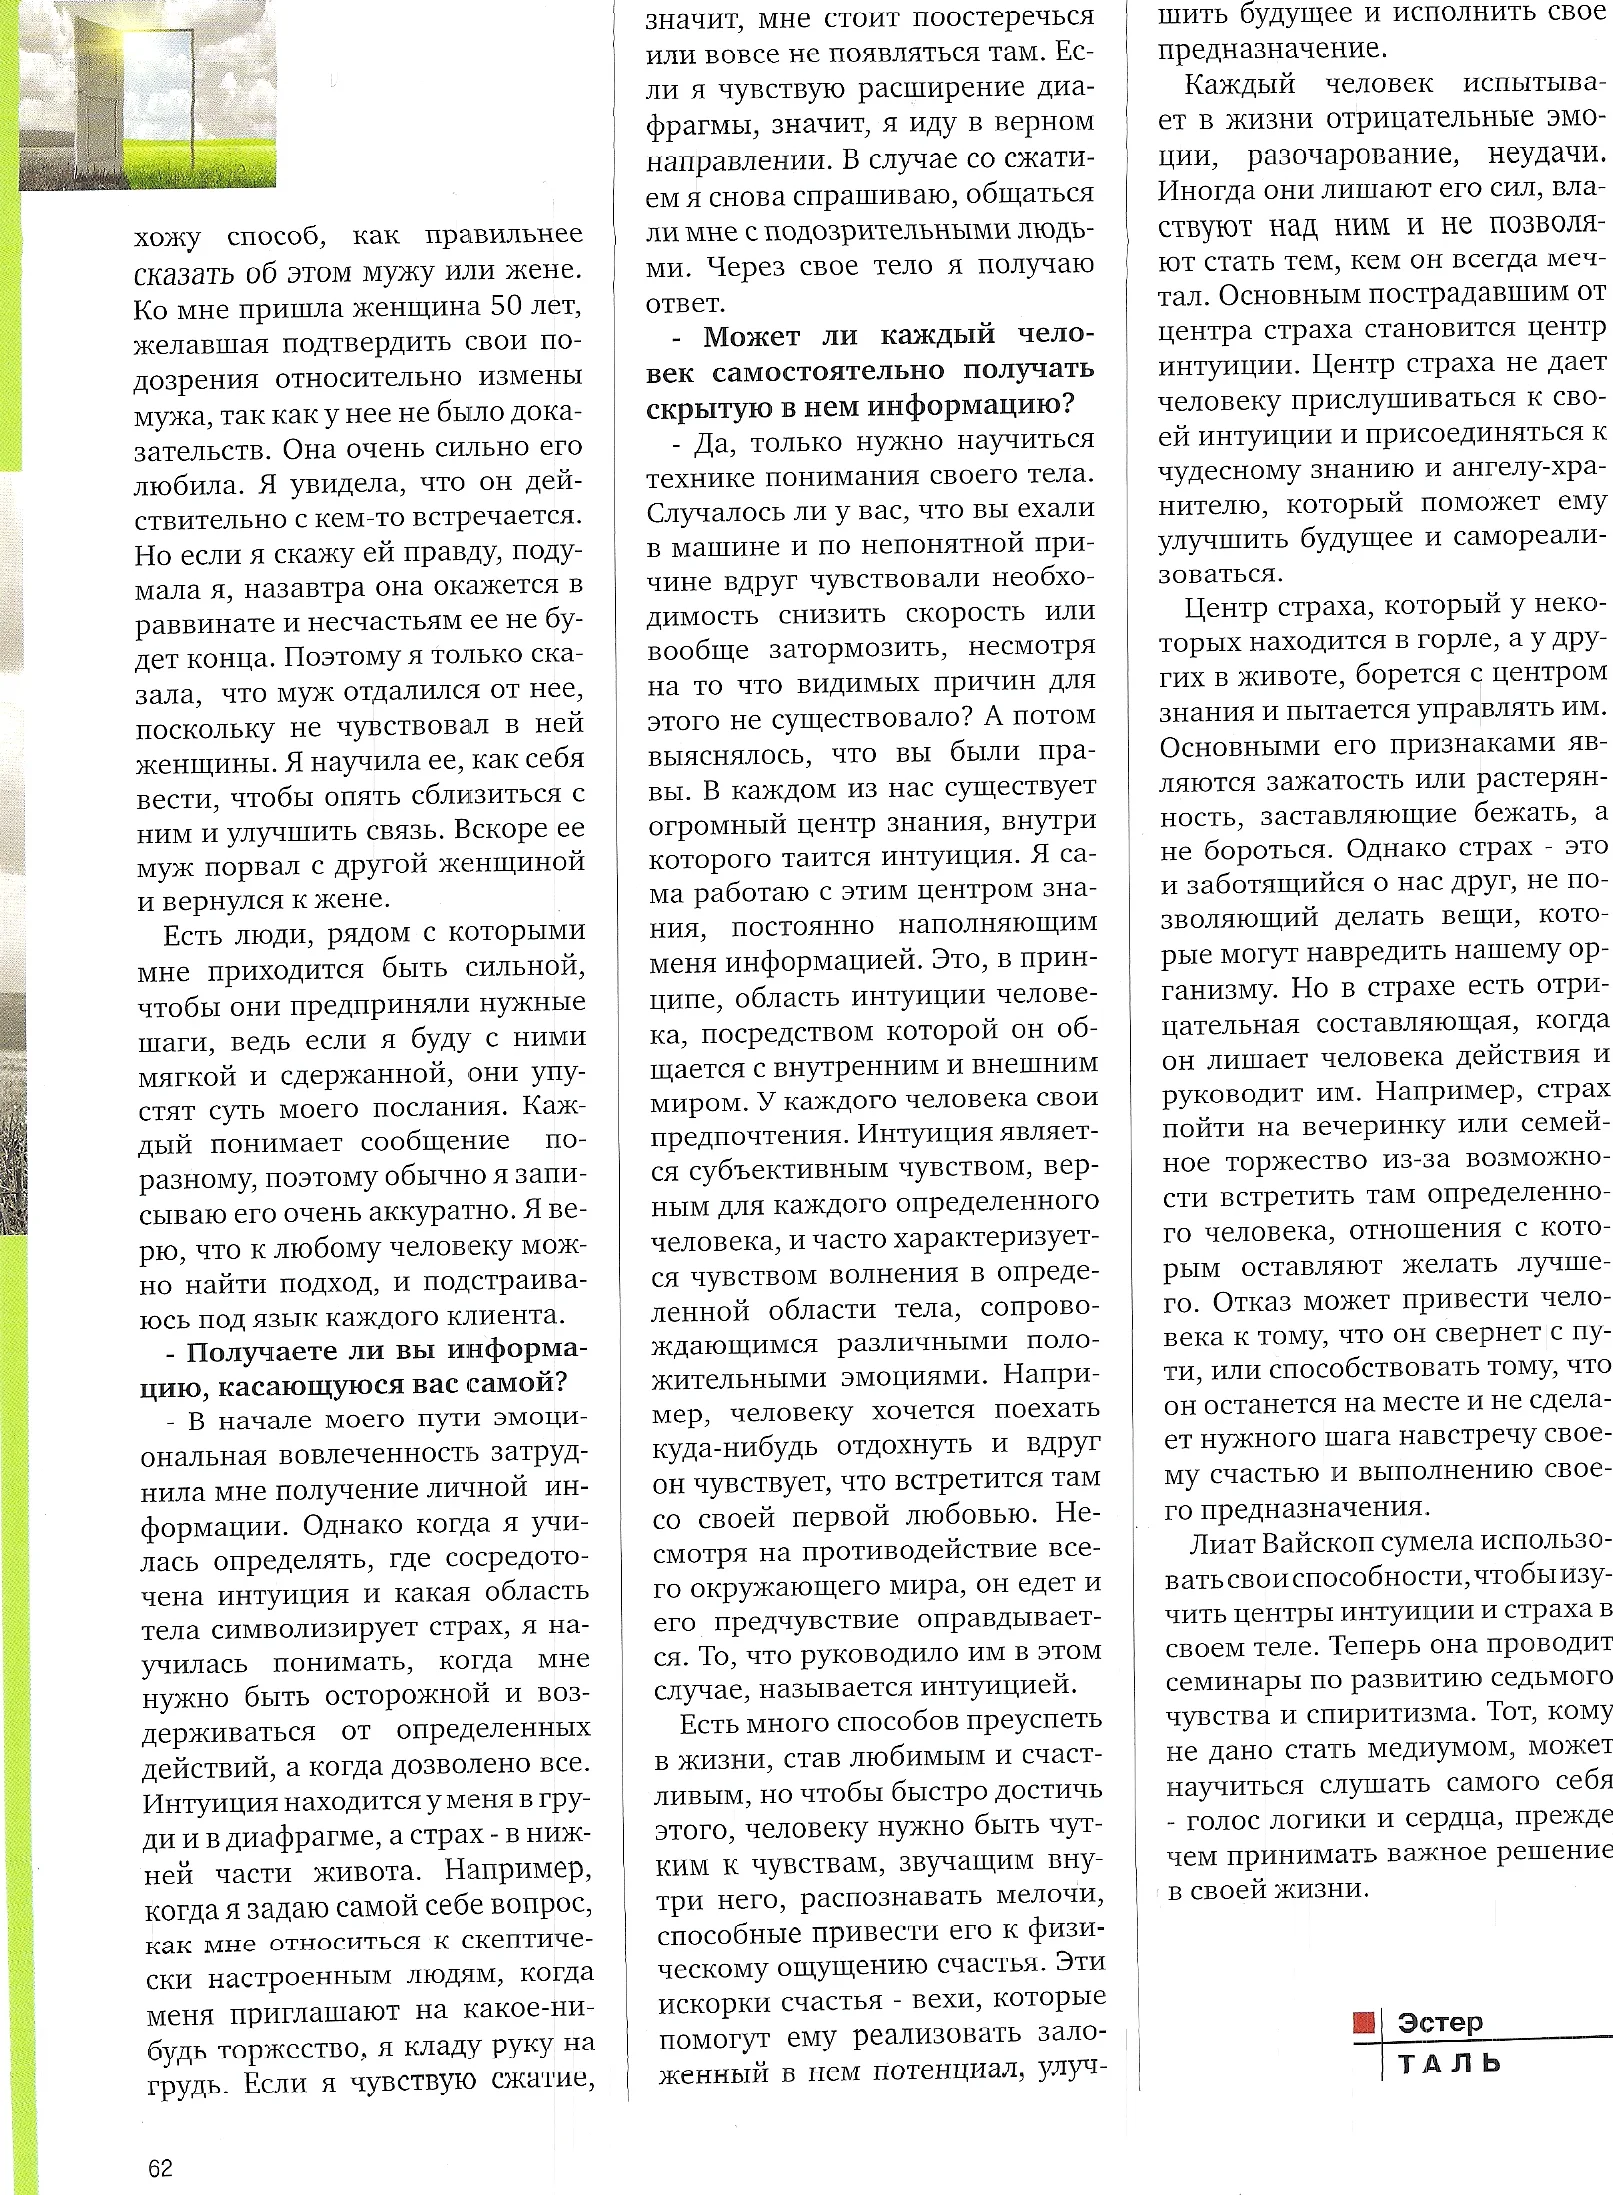 ליאת וויסקופ מתקשרת בכתבה בעיתון ברוסית